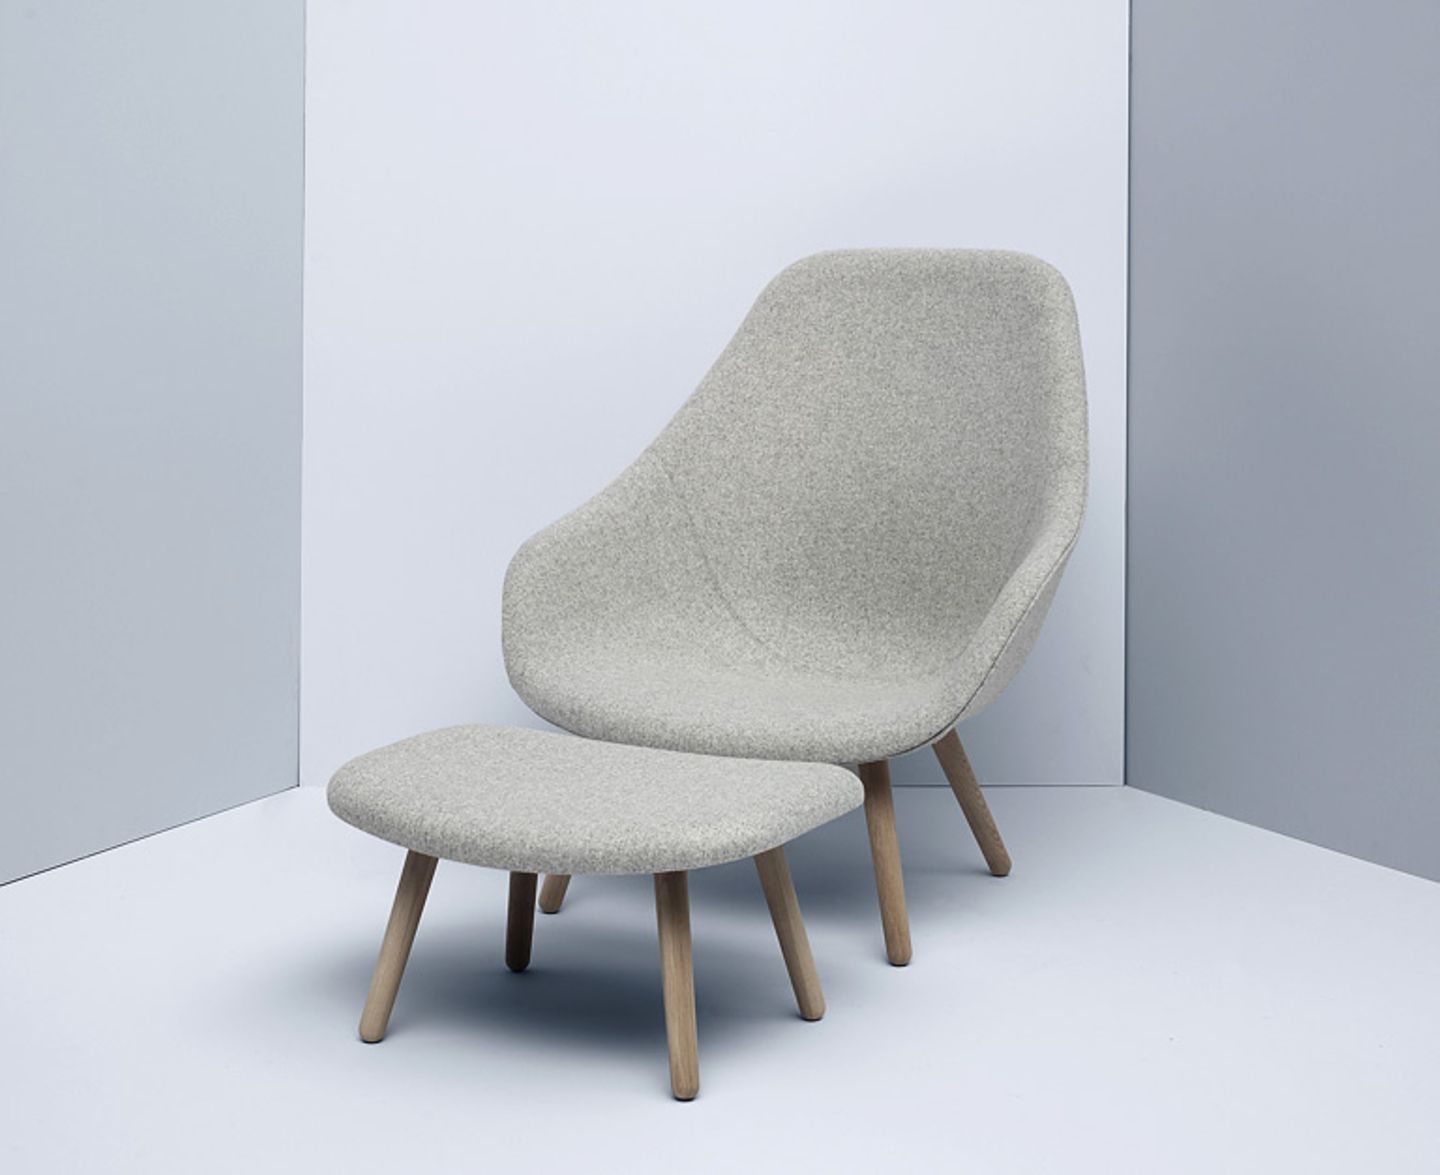 Neuer Klassiker: "About a Lounge Chair" von Hay